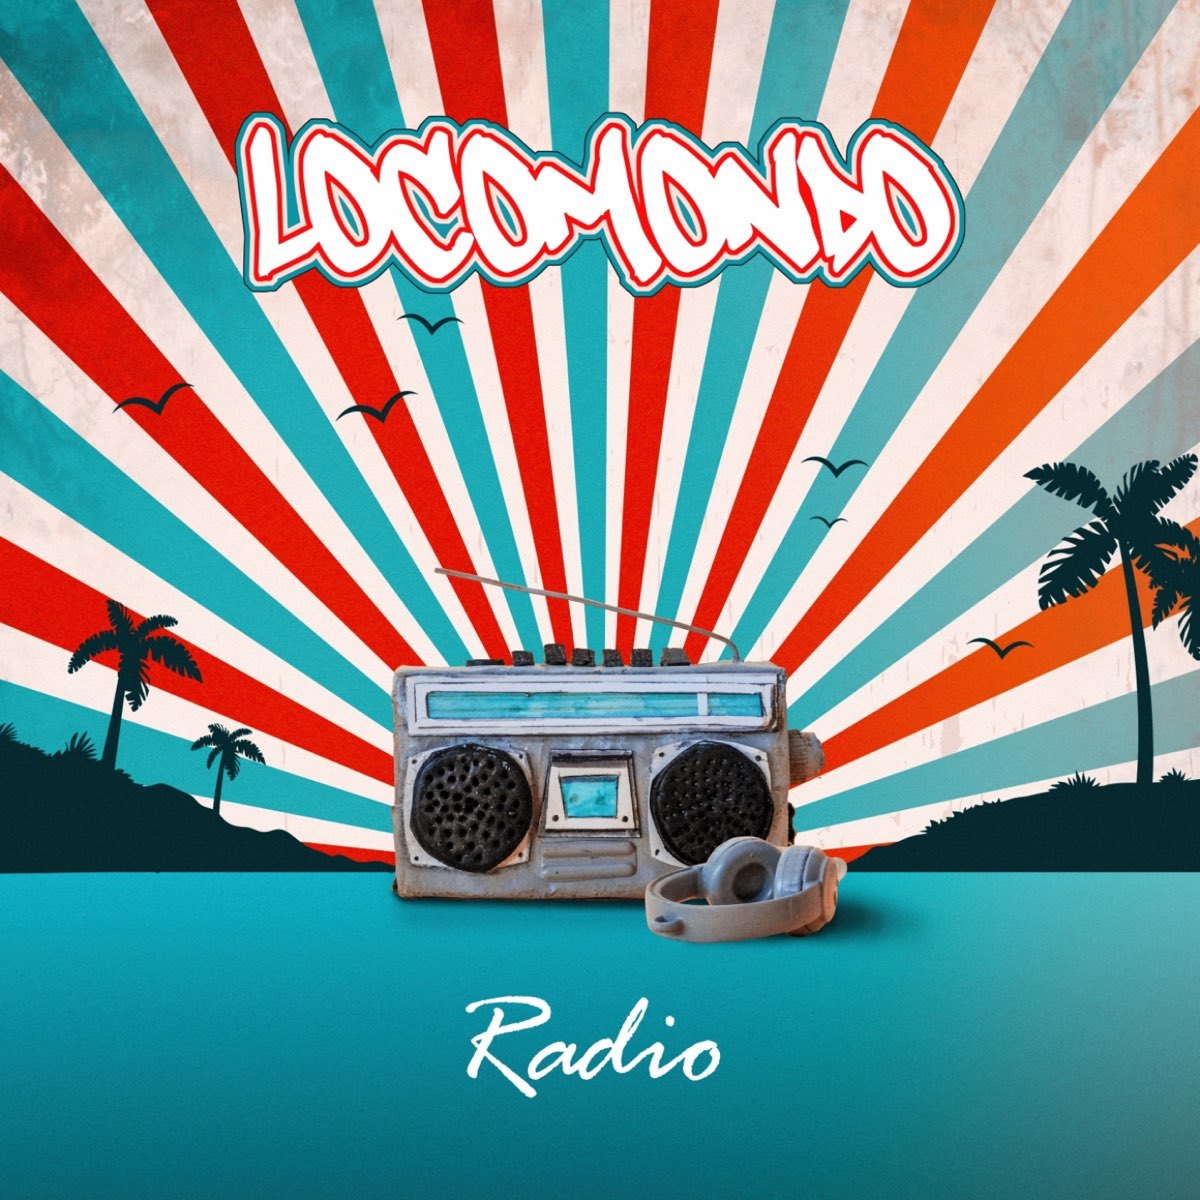 Radio - Άλμπουμ από Locomondo - Apple Music